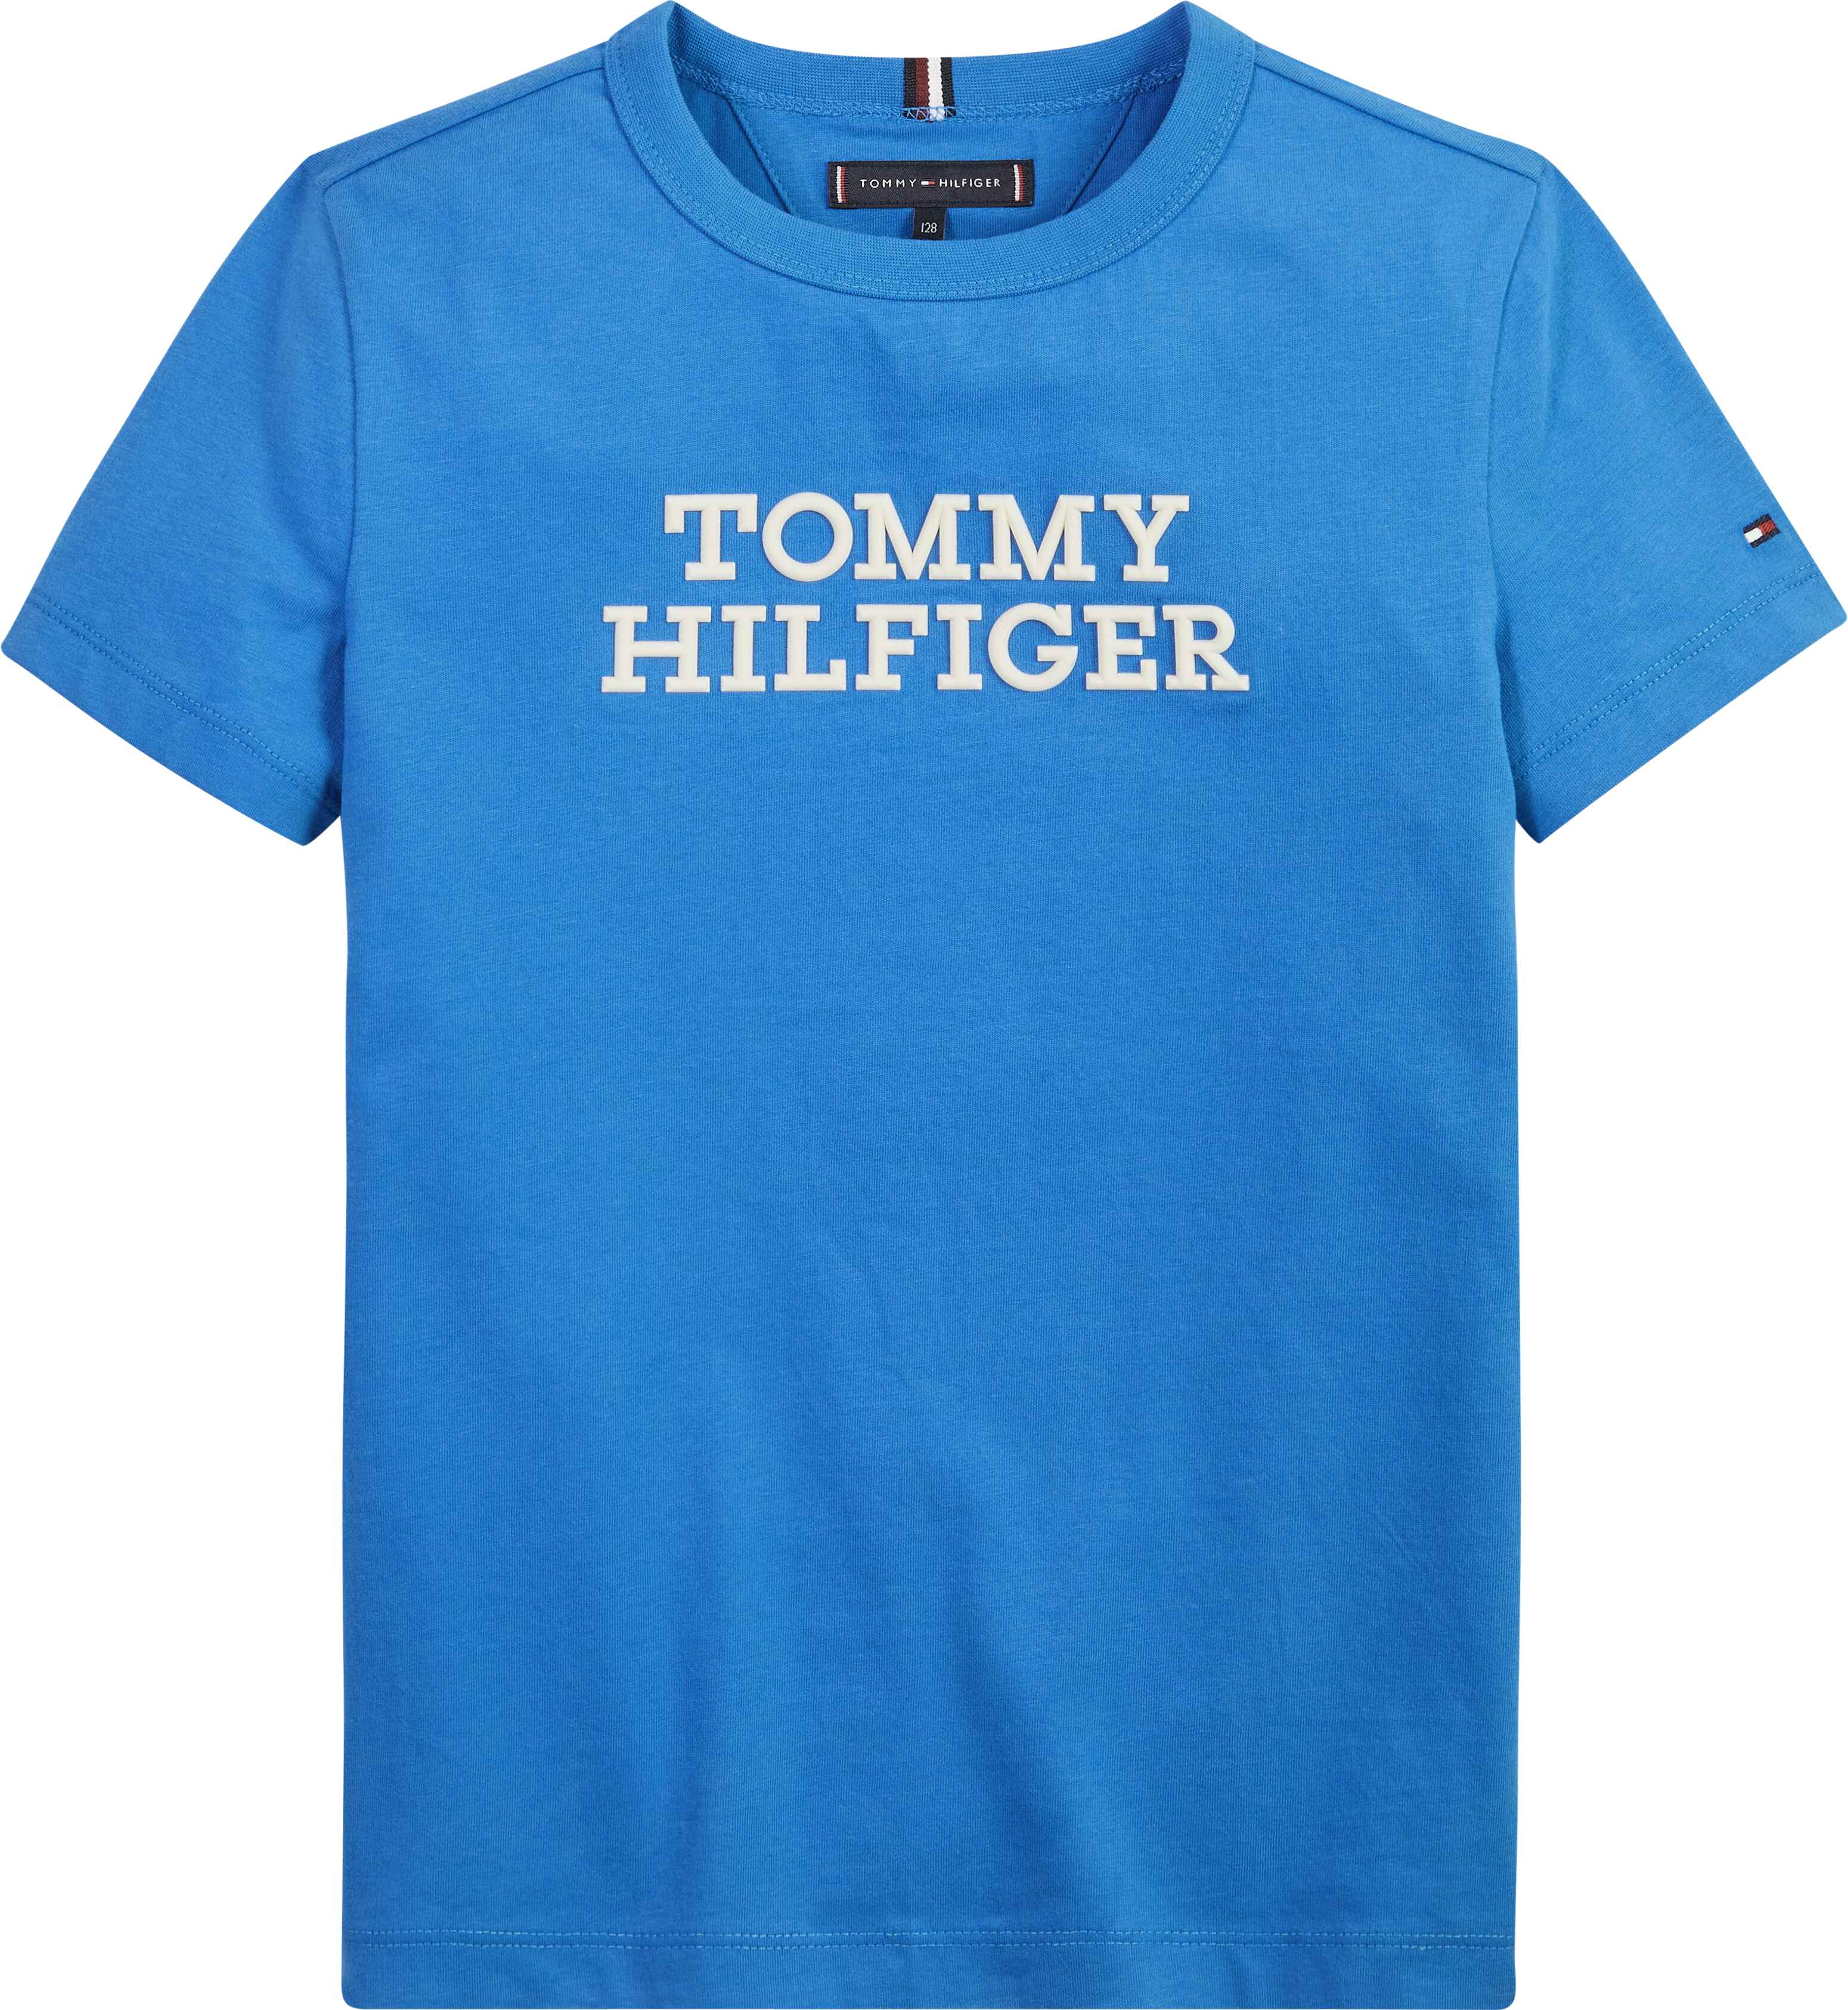 TOMMY HILFIGER - TOMMY HILFIGER LOGO TEE - KB0KB08555